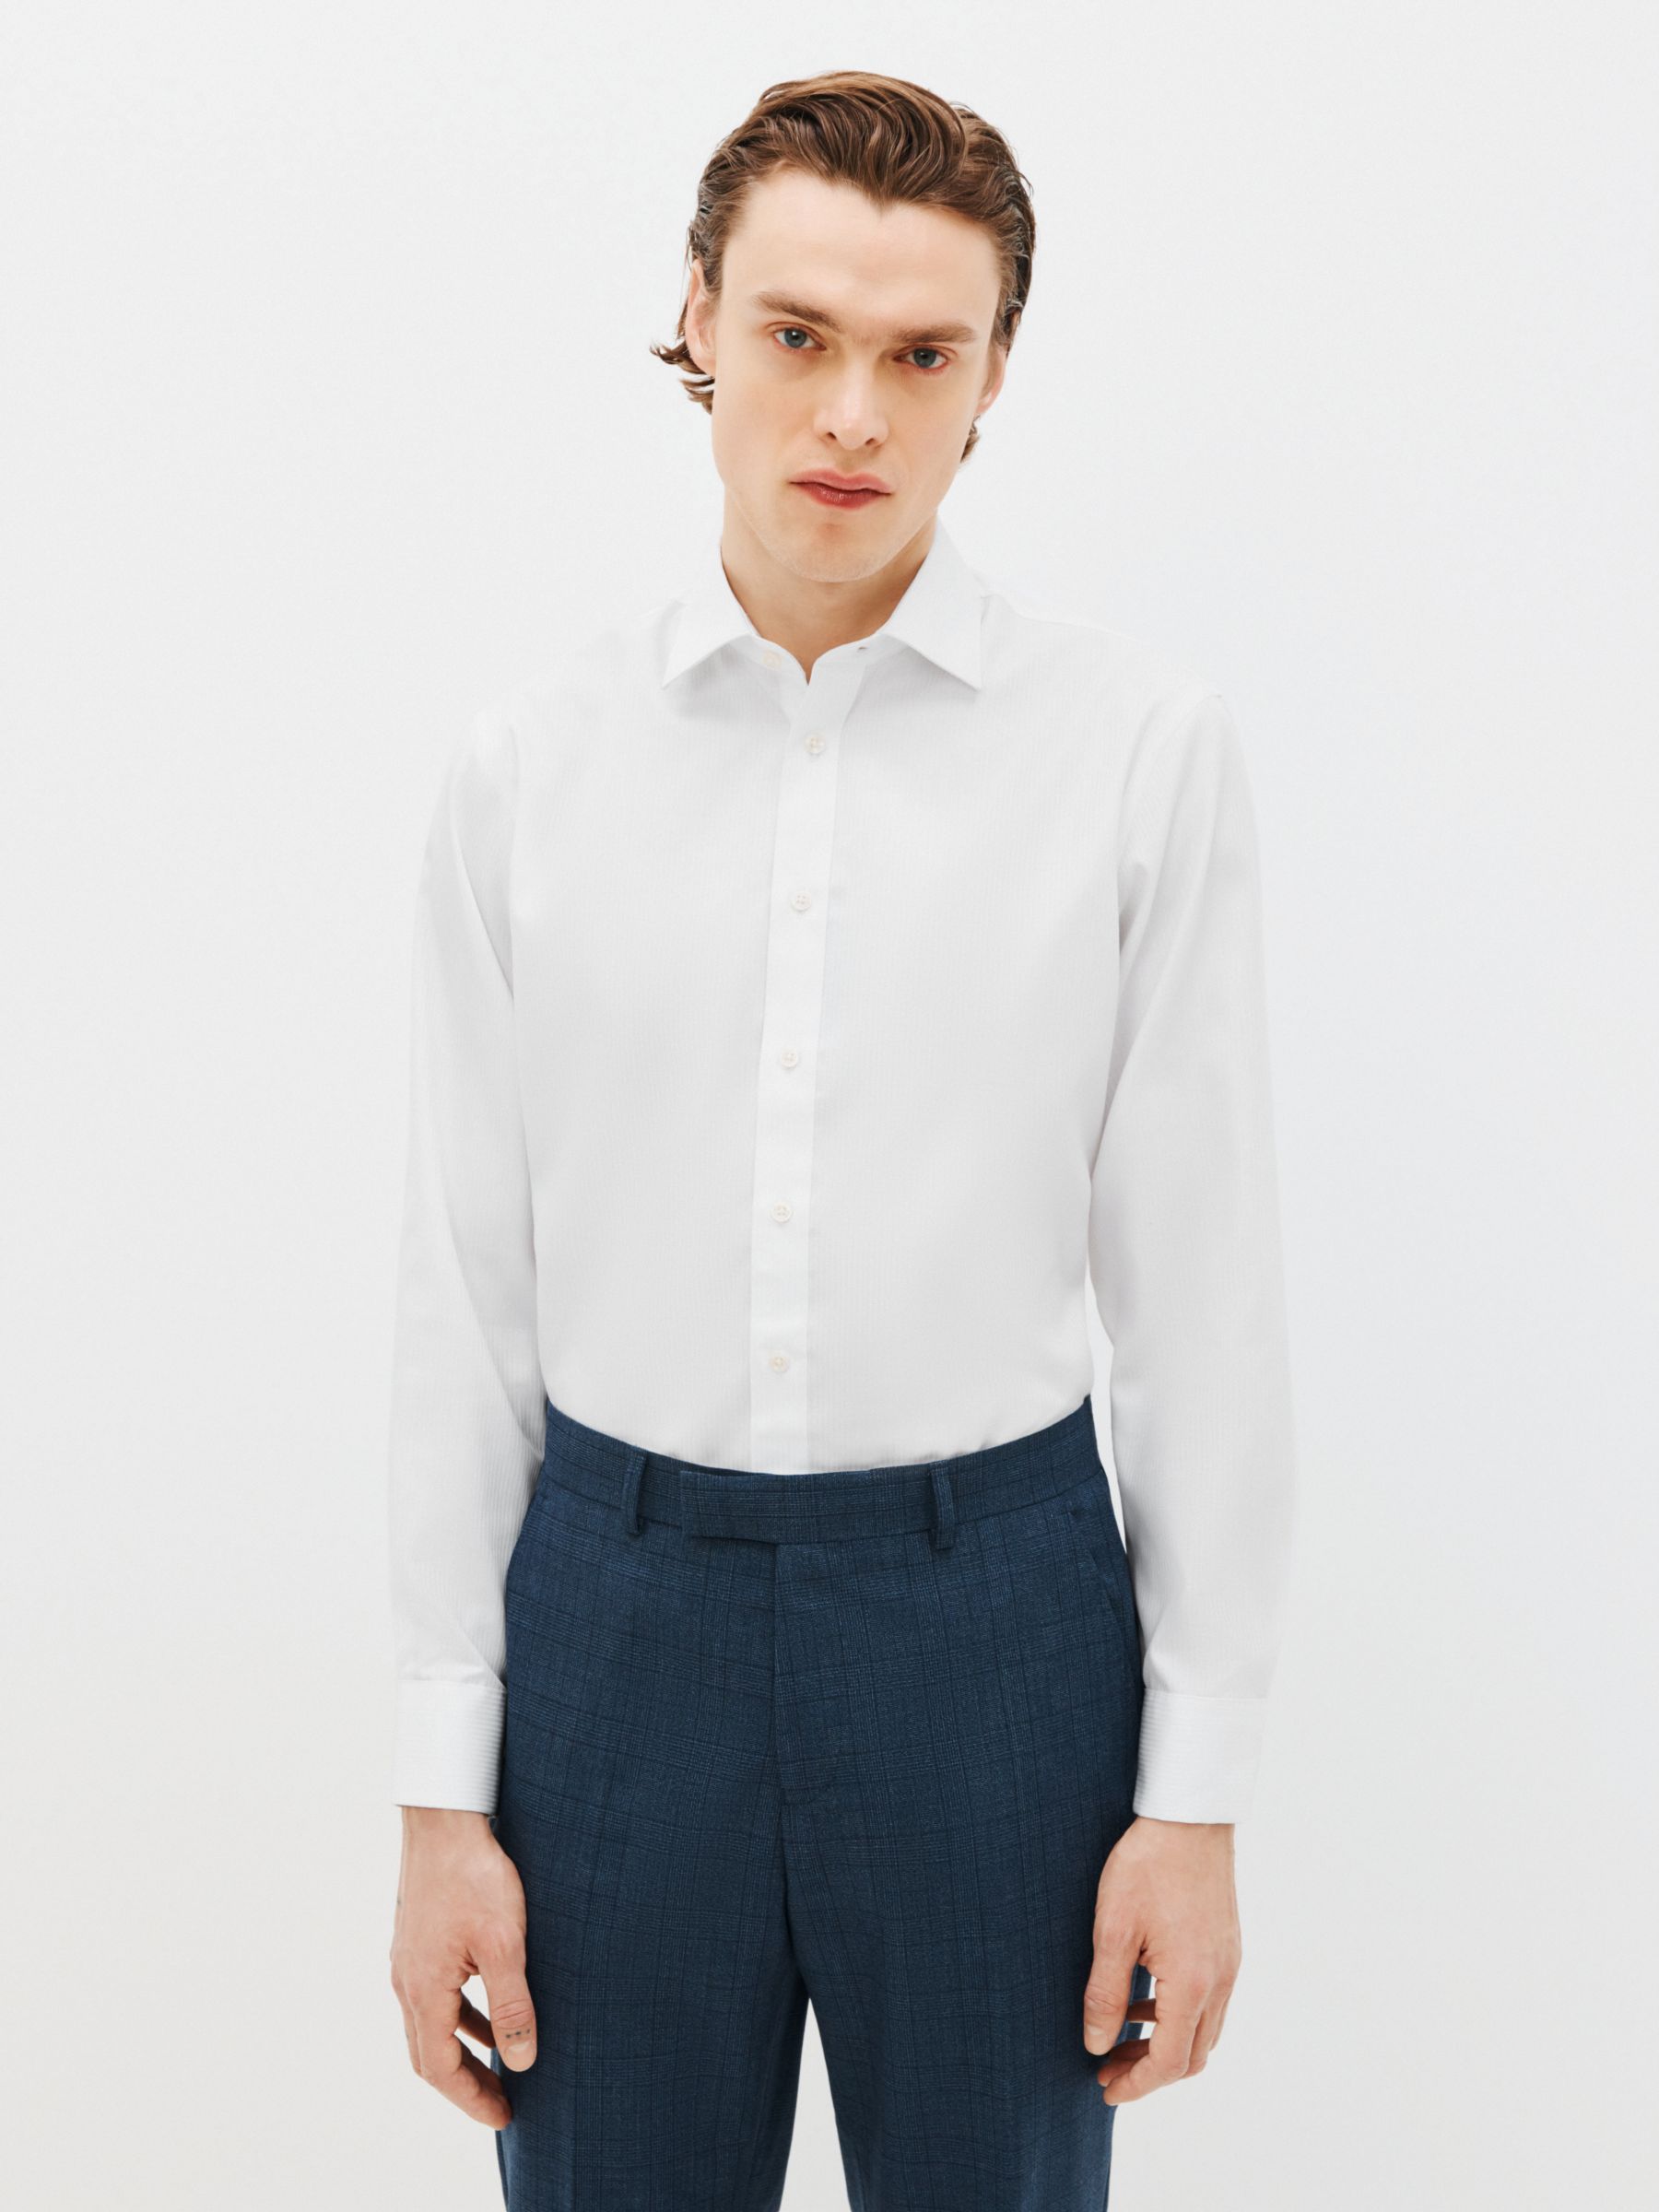 John Lewis белая рубашка с полосками без утюга цена и фото